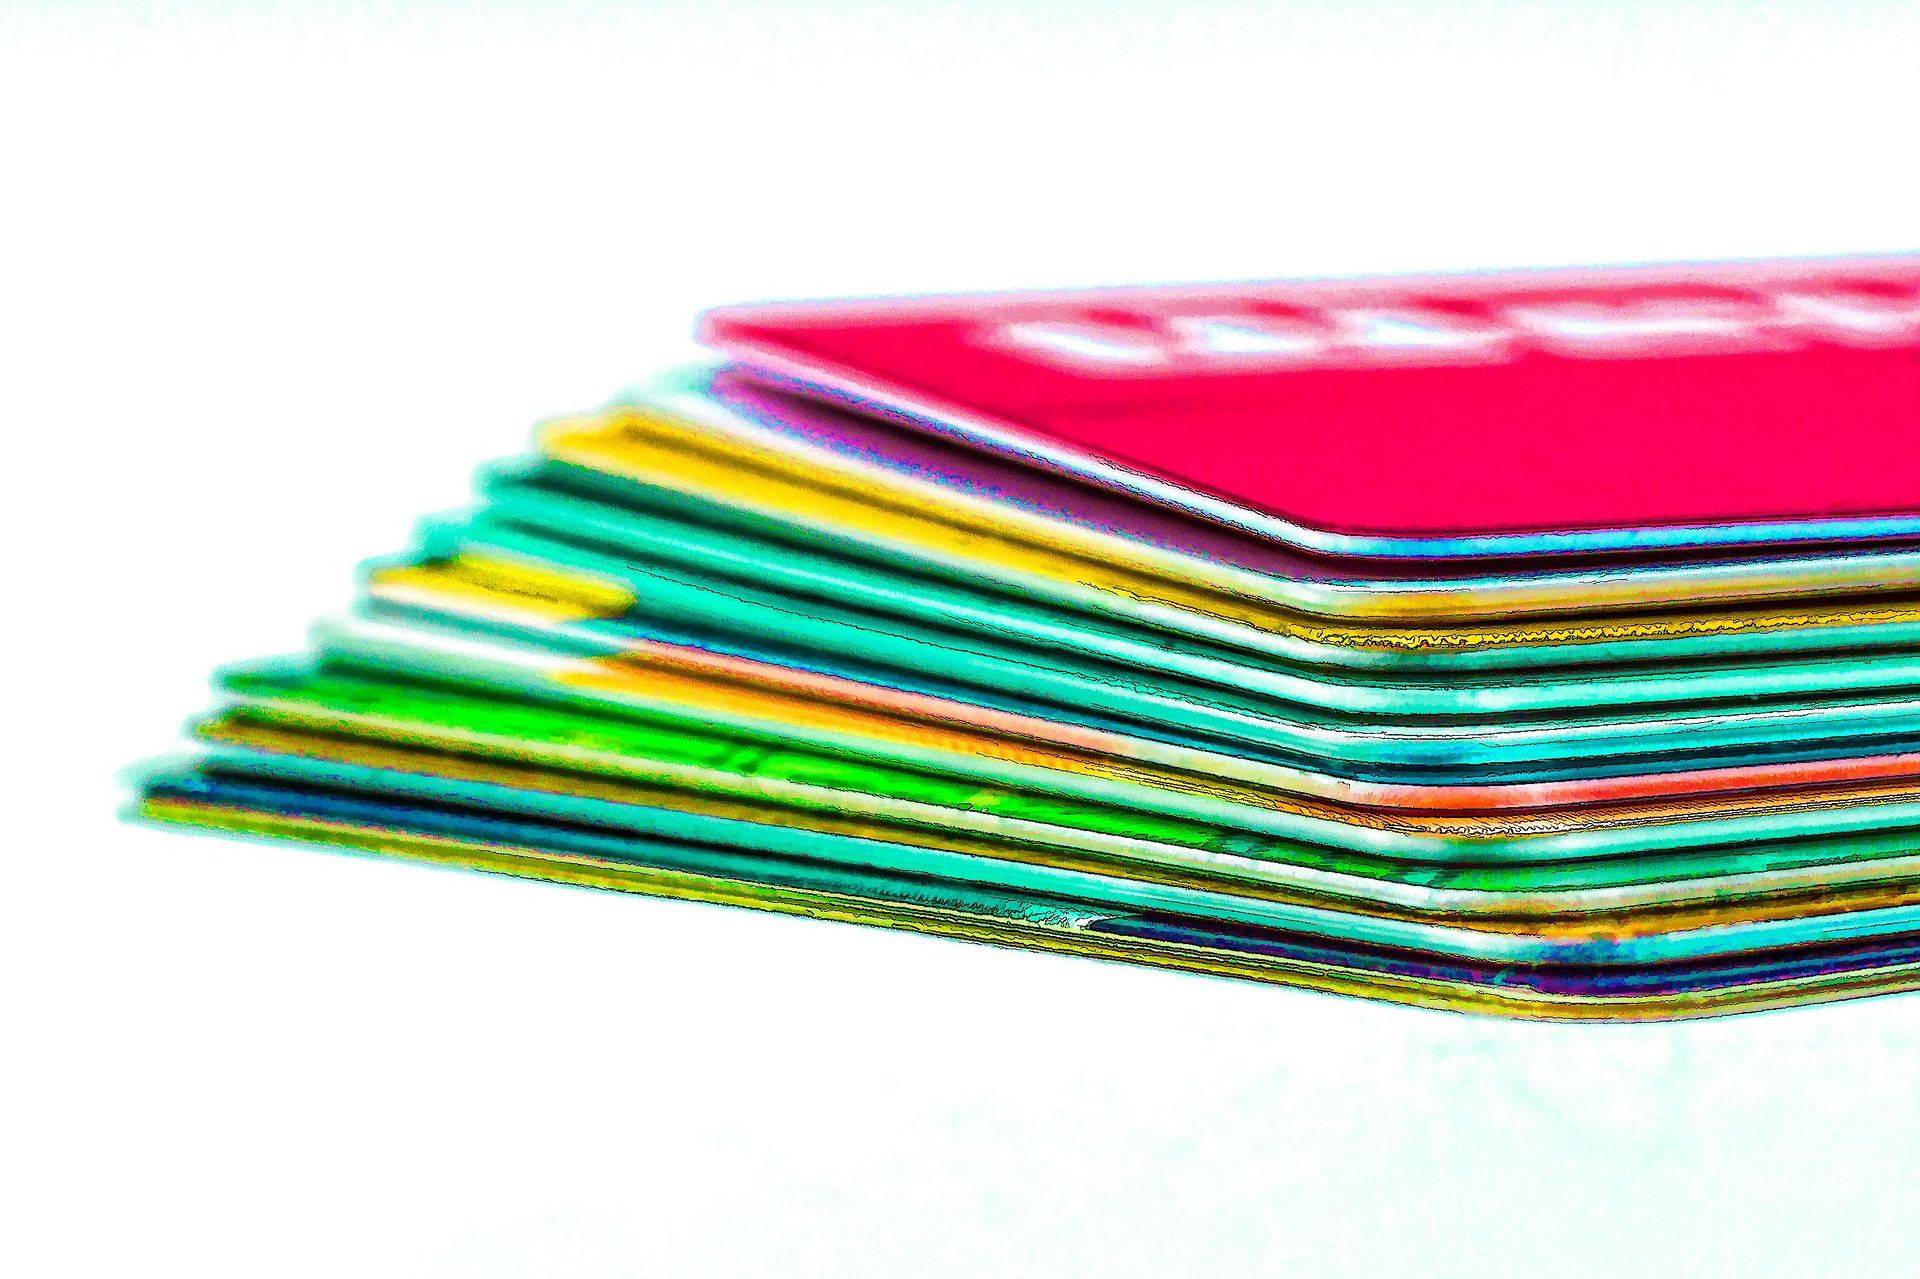 Excesso de cartões de crédito (Imagem: Pixabay)